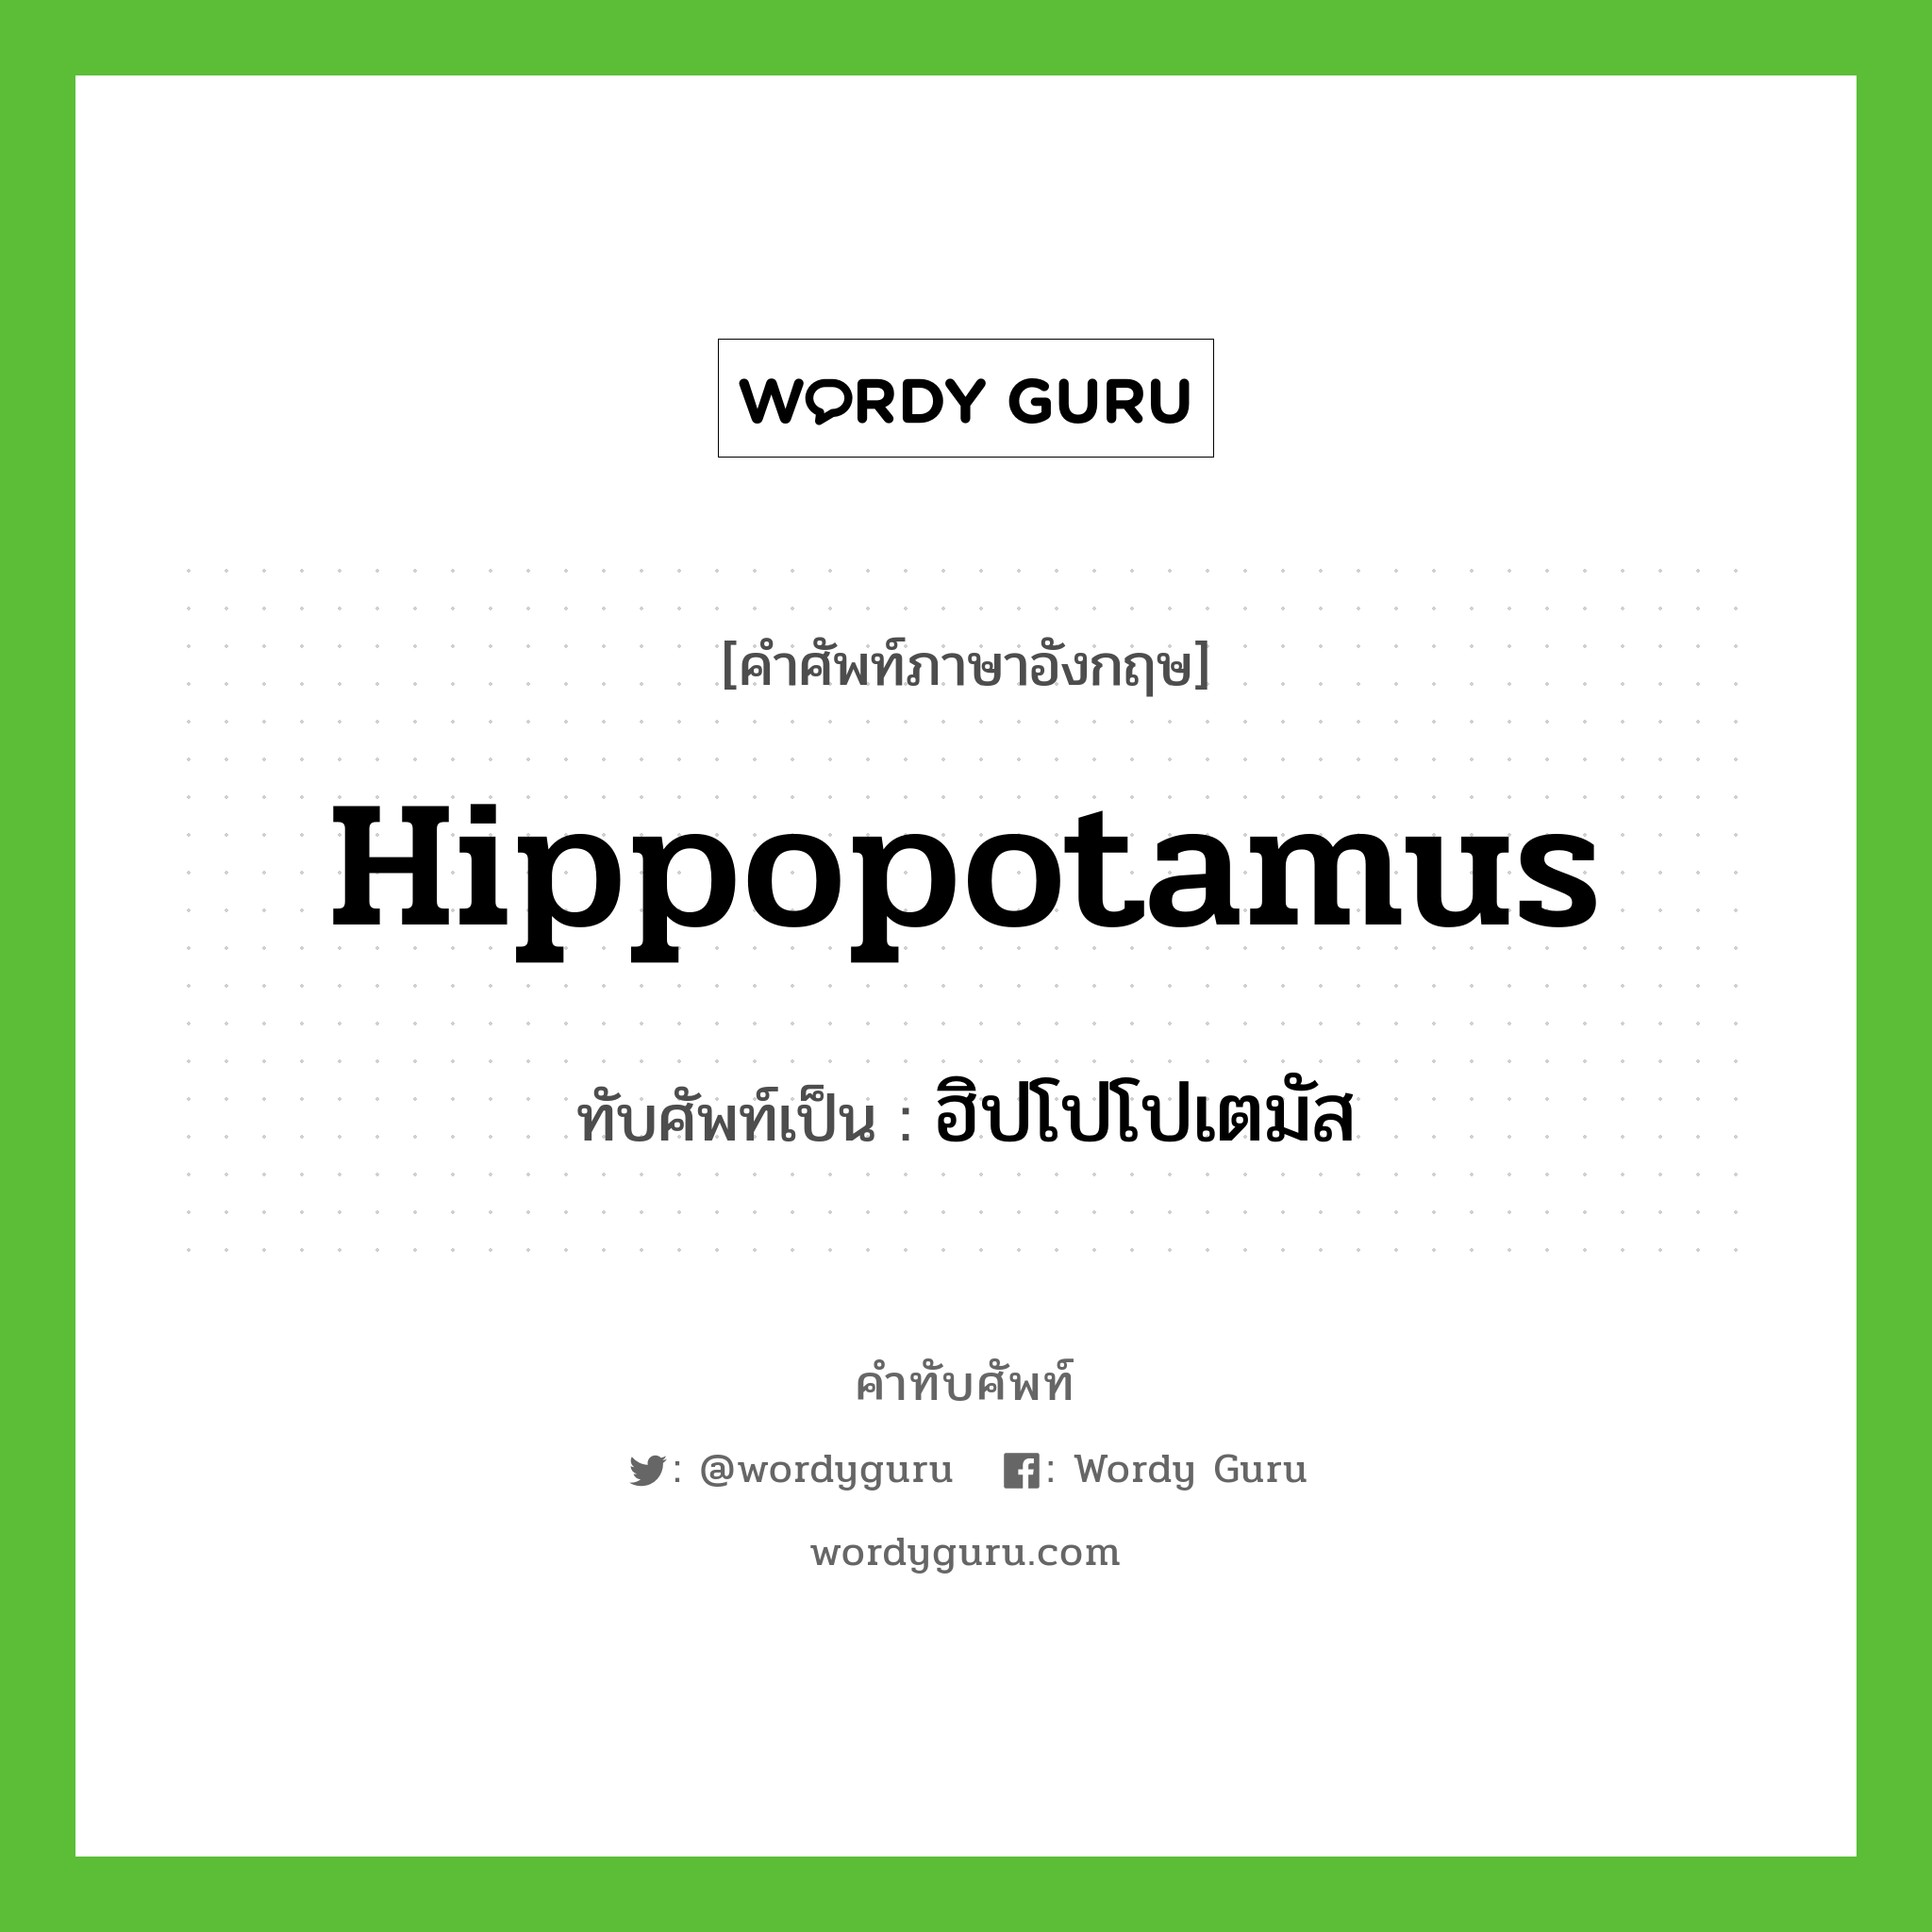 ฮิปโปโปเตมัส เขียนอย่างไร?, คำศัพท์ภาษาอังกฤษ ฮิปโปโปเตมัส ทับศัพท์เป็น hippopotamus